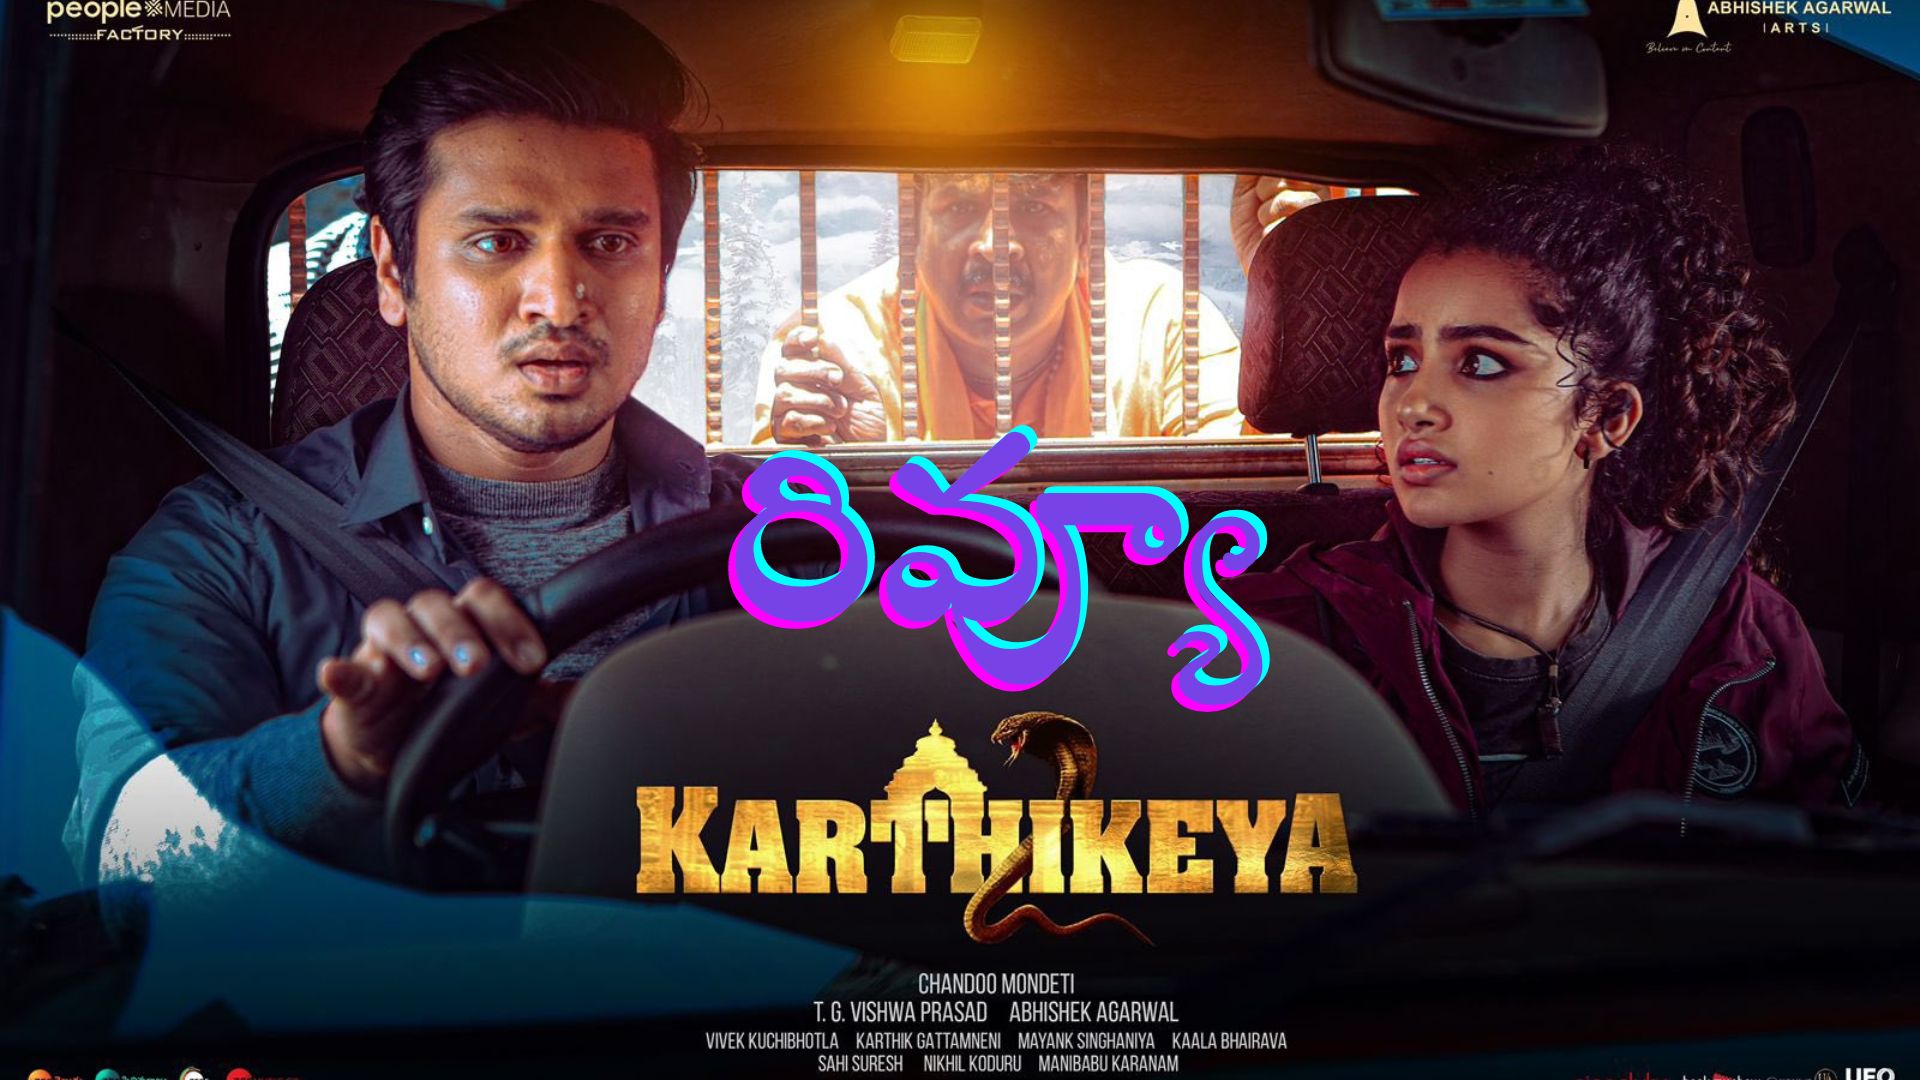 Karthikeya 2 Review కార్తికేయ 2 రివ్యూ